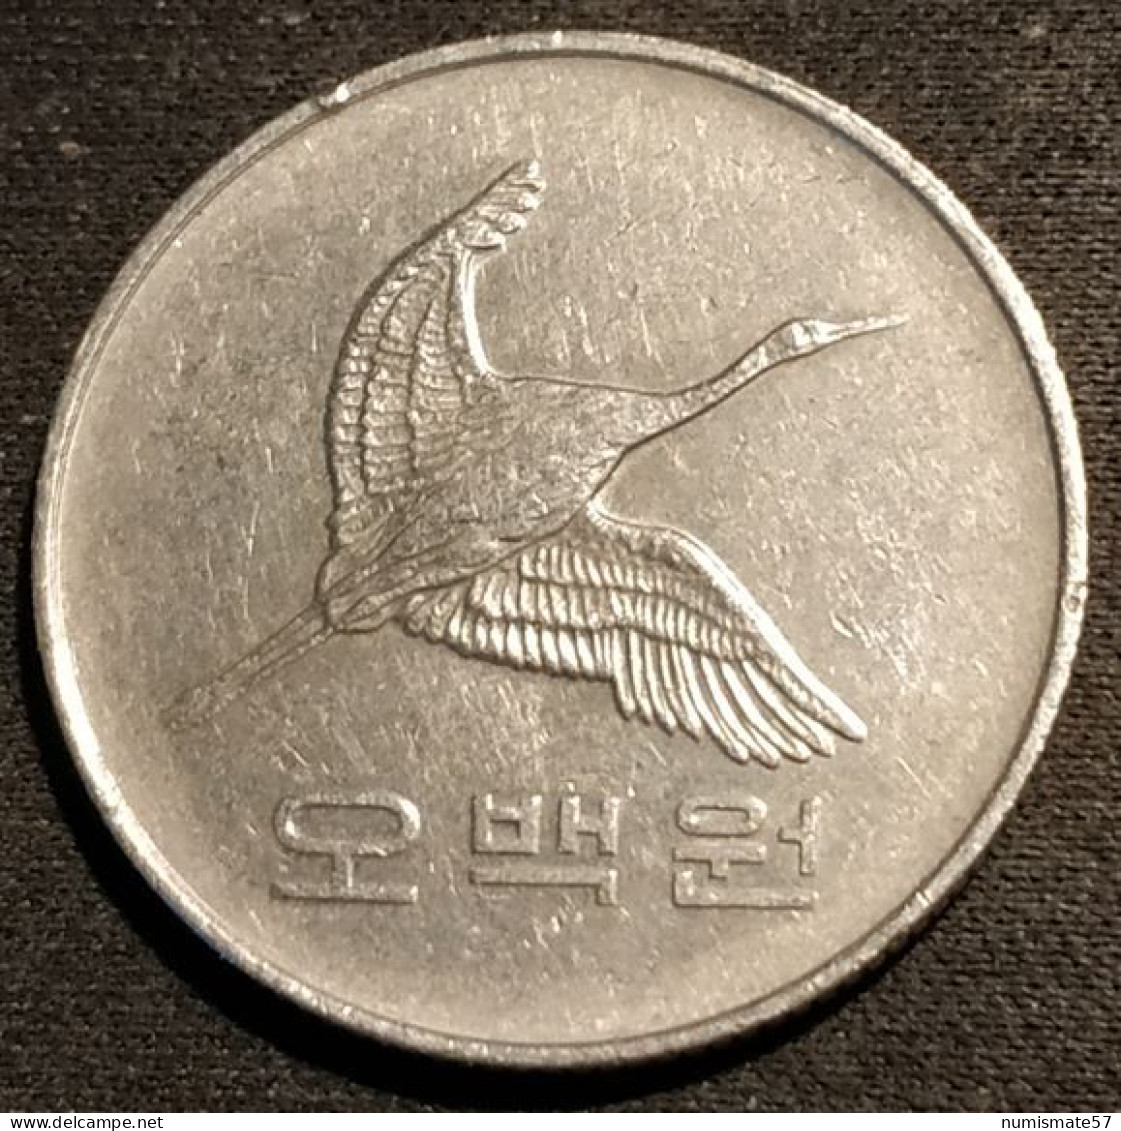 COREE DU SUD - SOUTH KOREA - 500 WON 1993 - Grue De Mandchourie - KM 27 - Coreal Del Sur